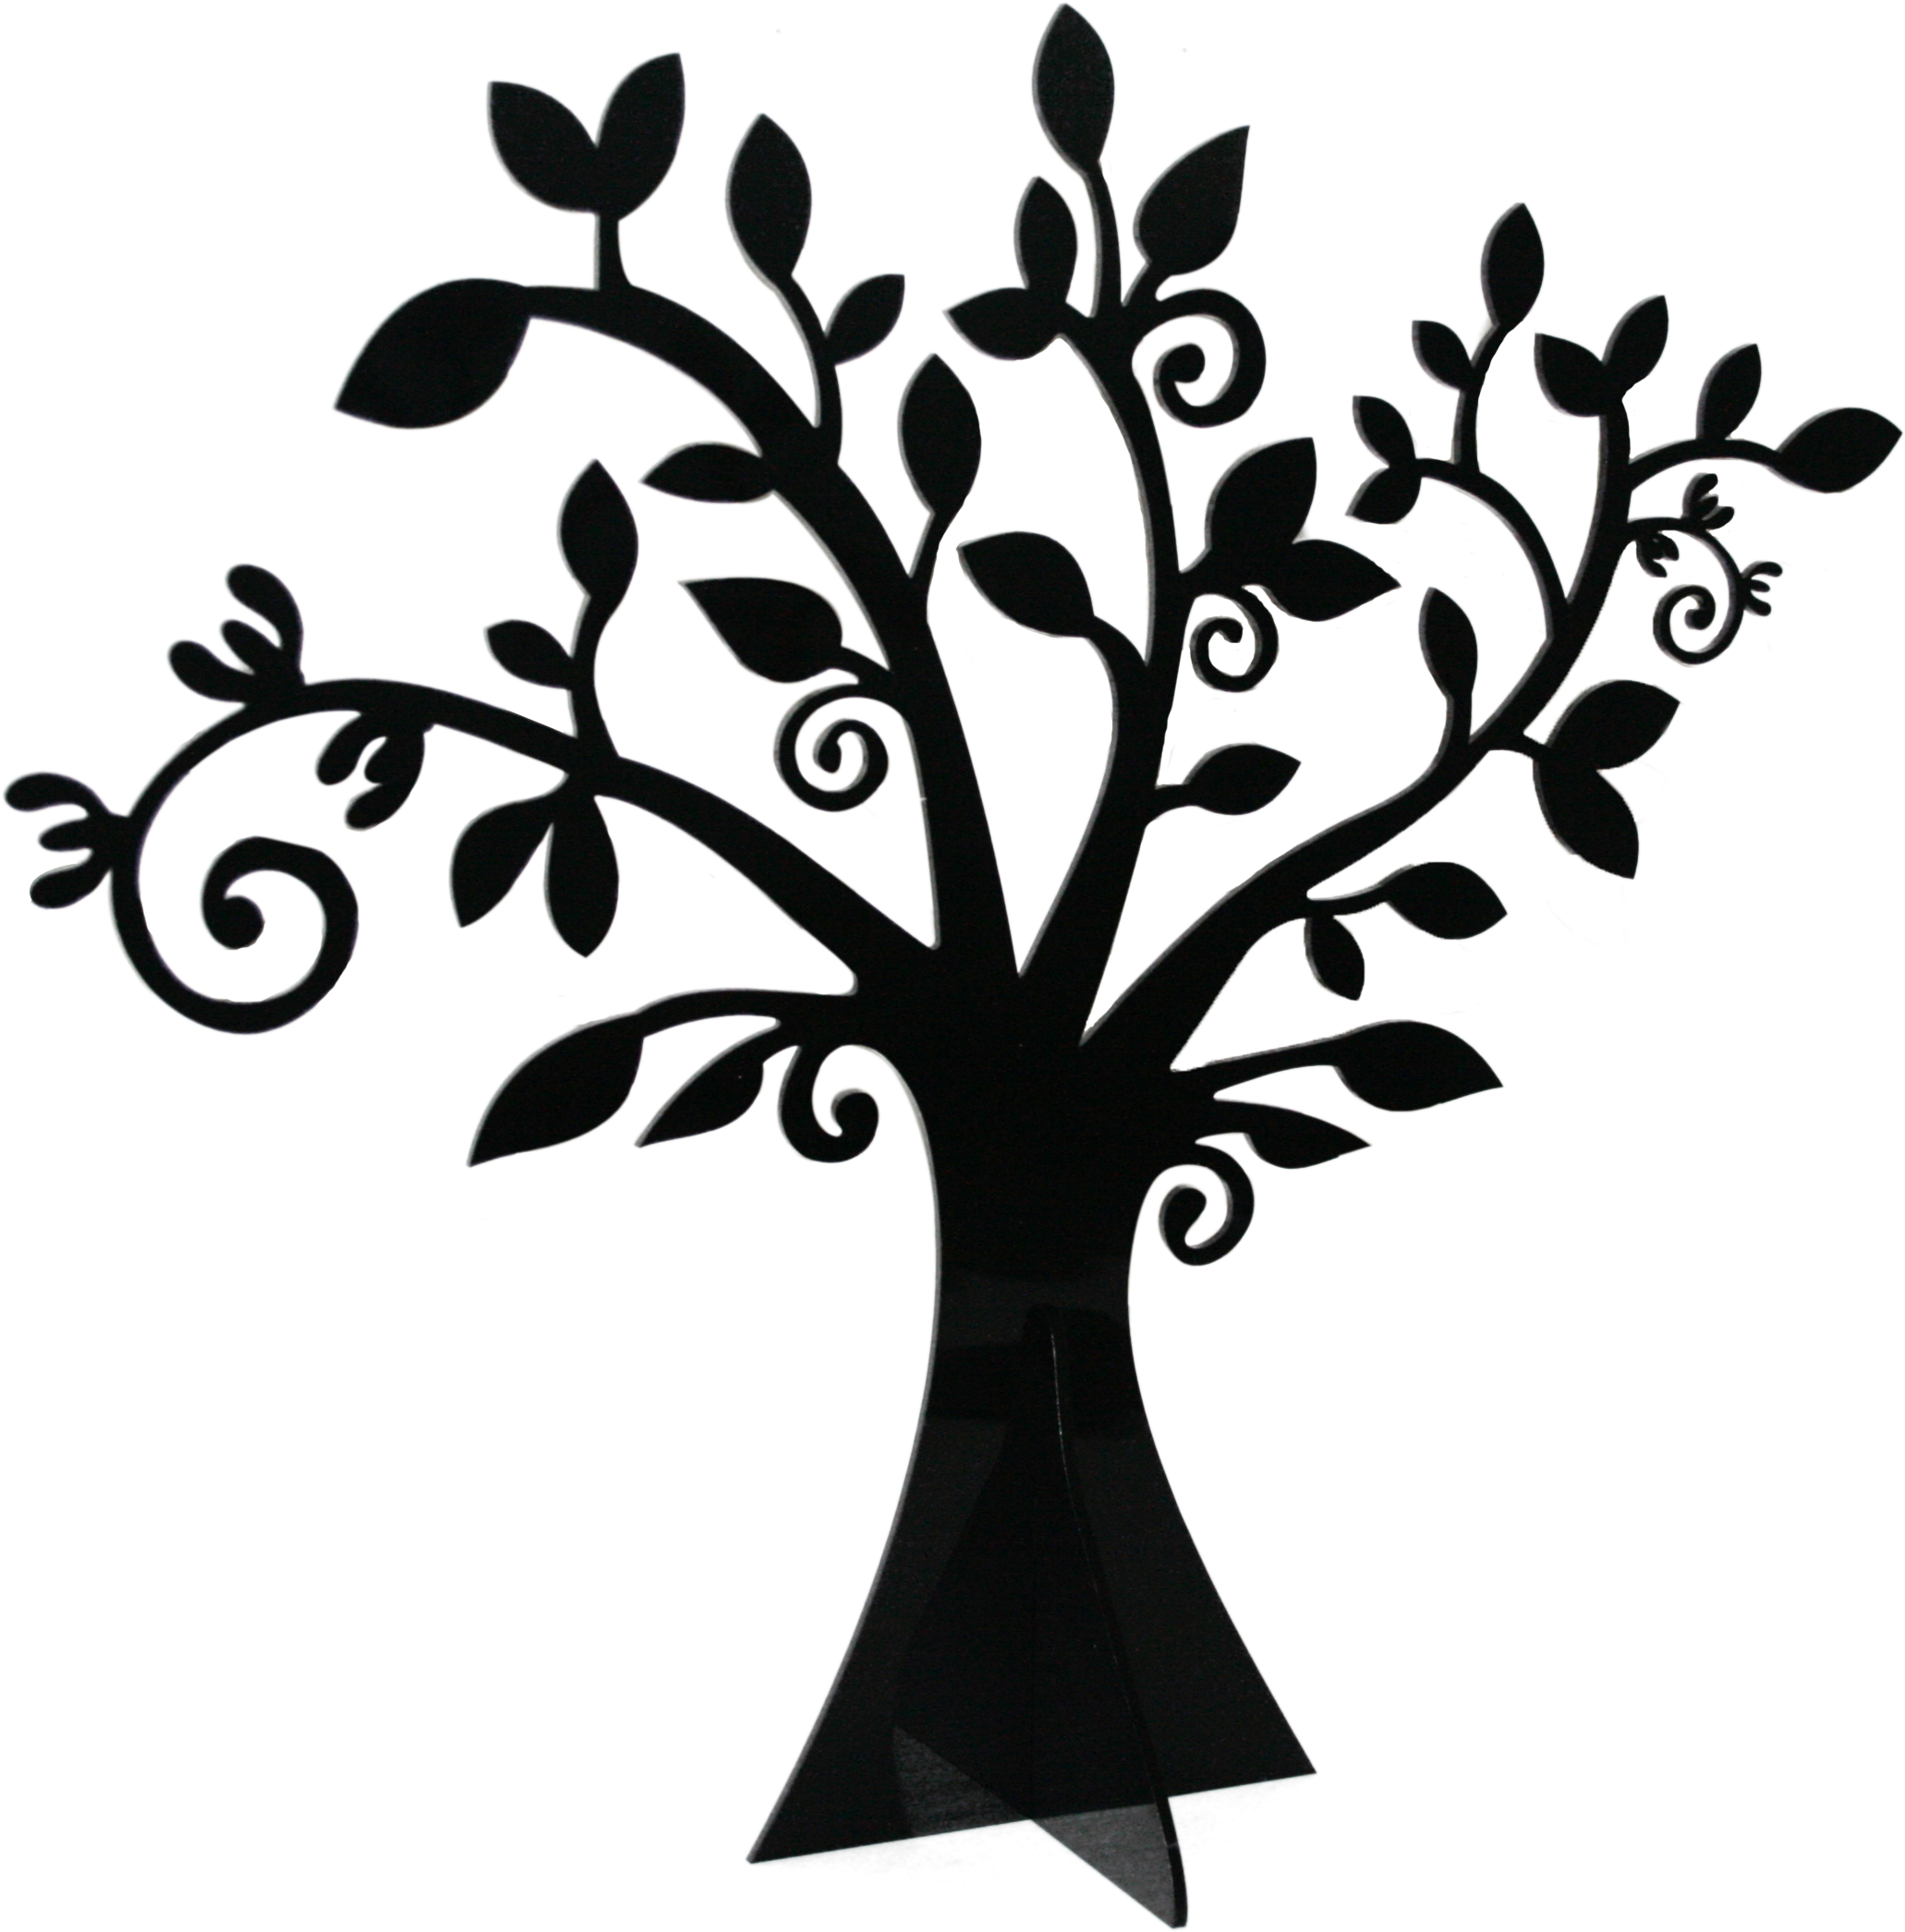 Whimsical Tree Black - Whimsical Tree Black And White (2151x2160)